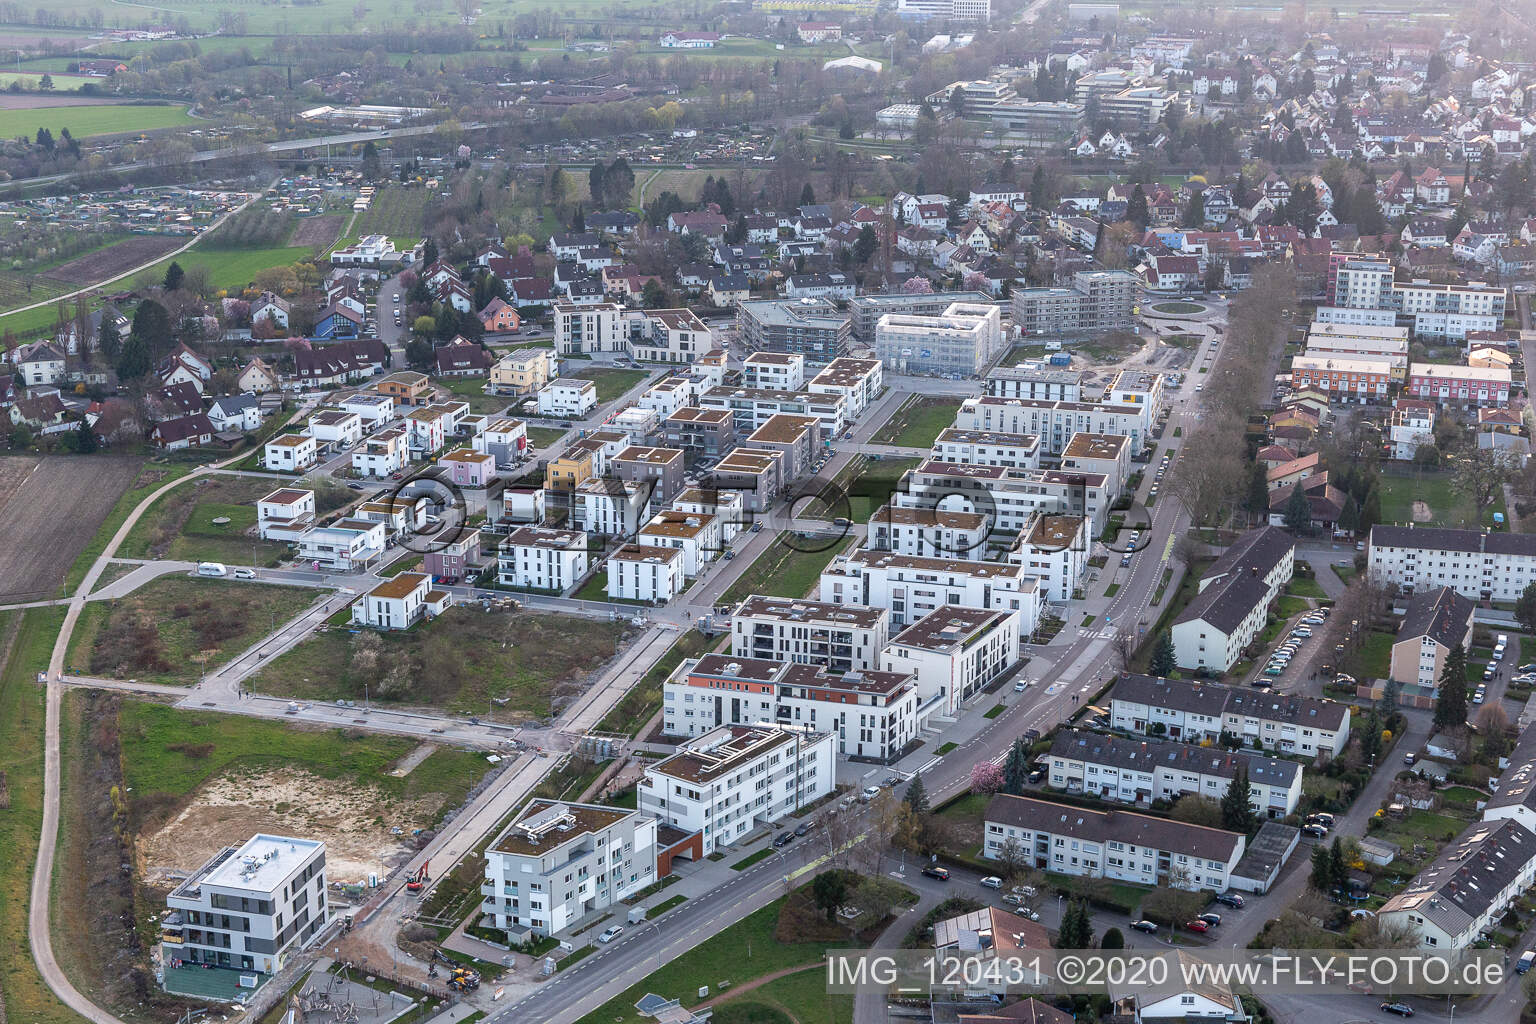 Vue aérienne de Chantier de construction d'un nouveau quartier résidentiel dans le quartier de maisons mitoyennes Im Seidenfaden à Offenburg dans le département Bade-Wurtemberg, Allemagne